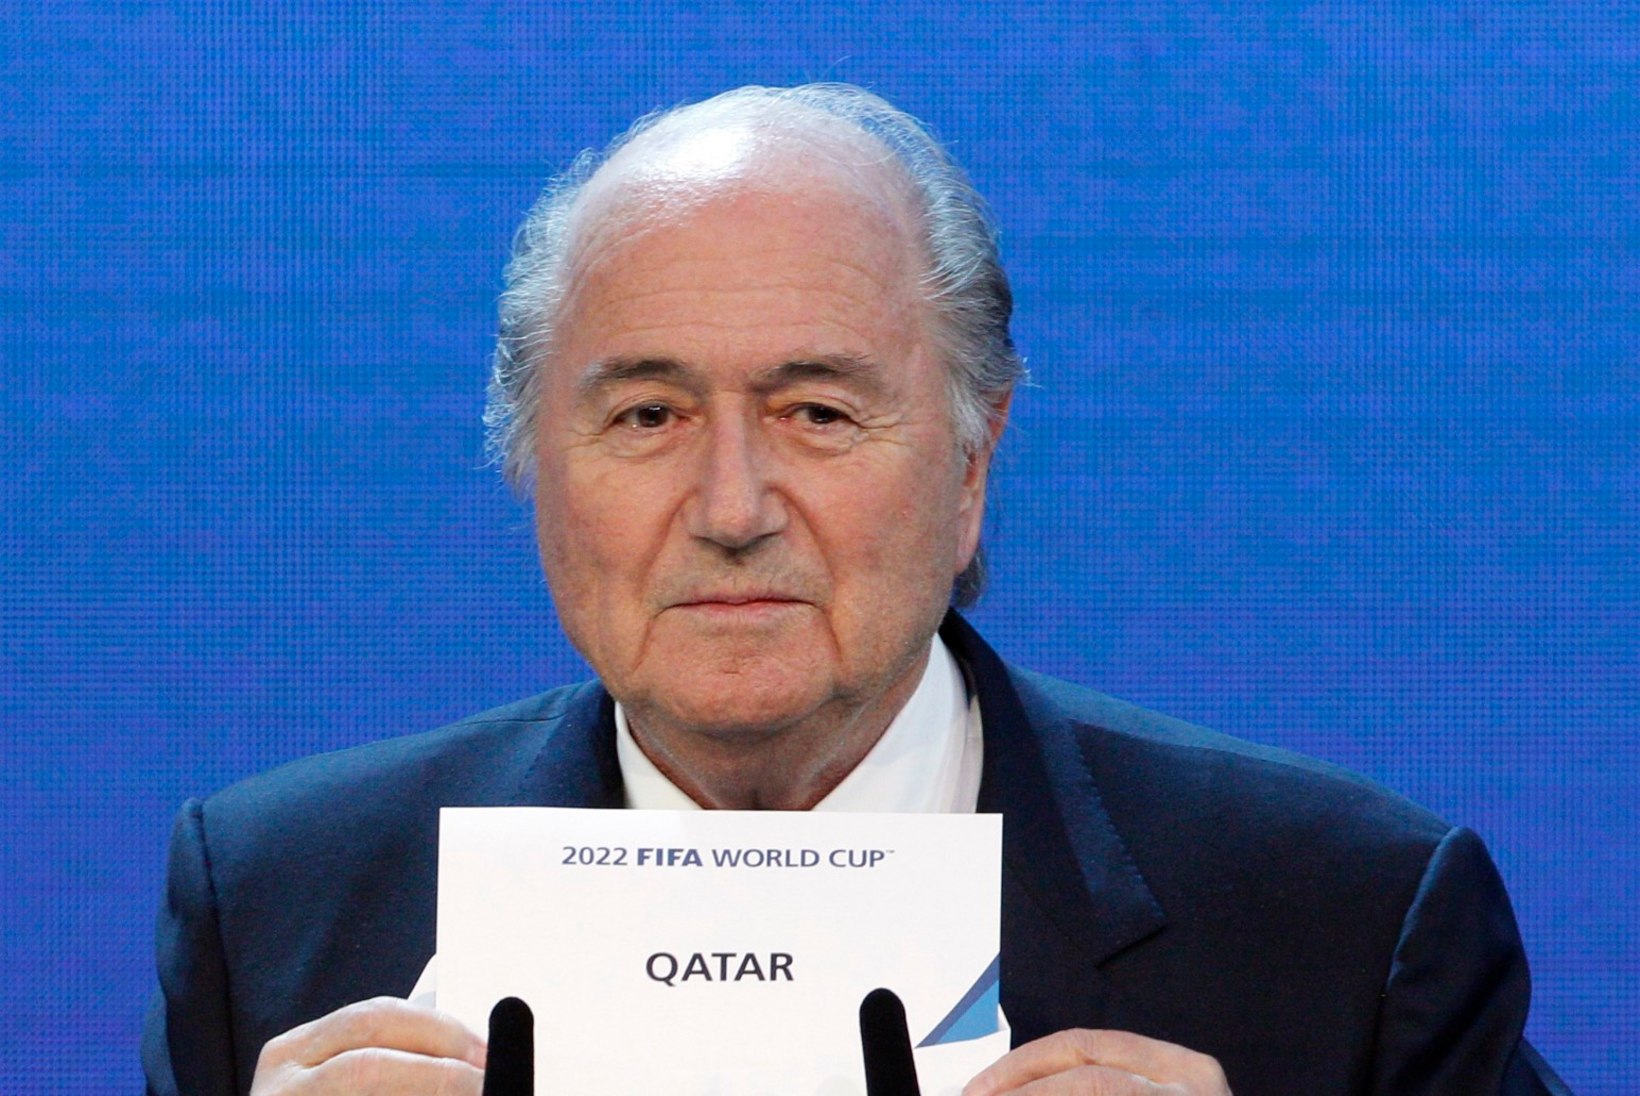 Saksa väljaanne sai enda käsutusse Katari MMi korraldusõigusi uuriva raporti: ühe FIFA ametniku 10aastase tütre pangakontole kanti ligi 1,8 miljonit eurot